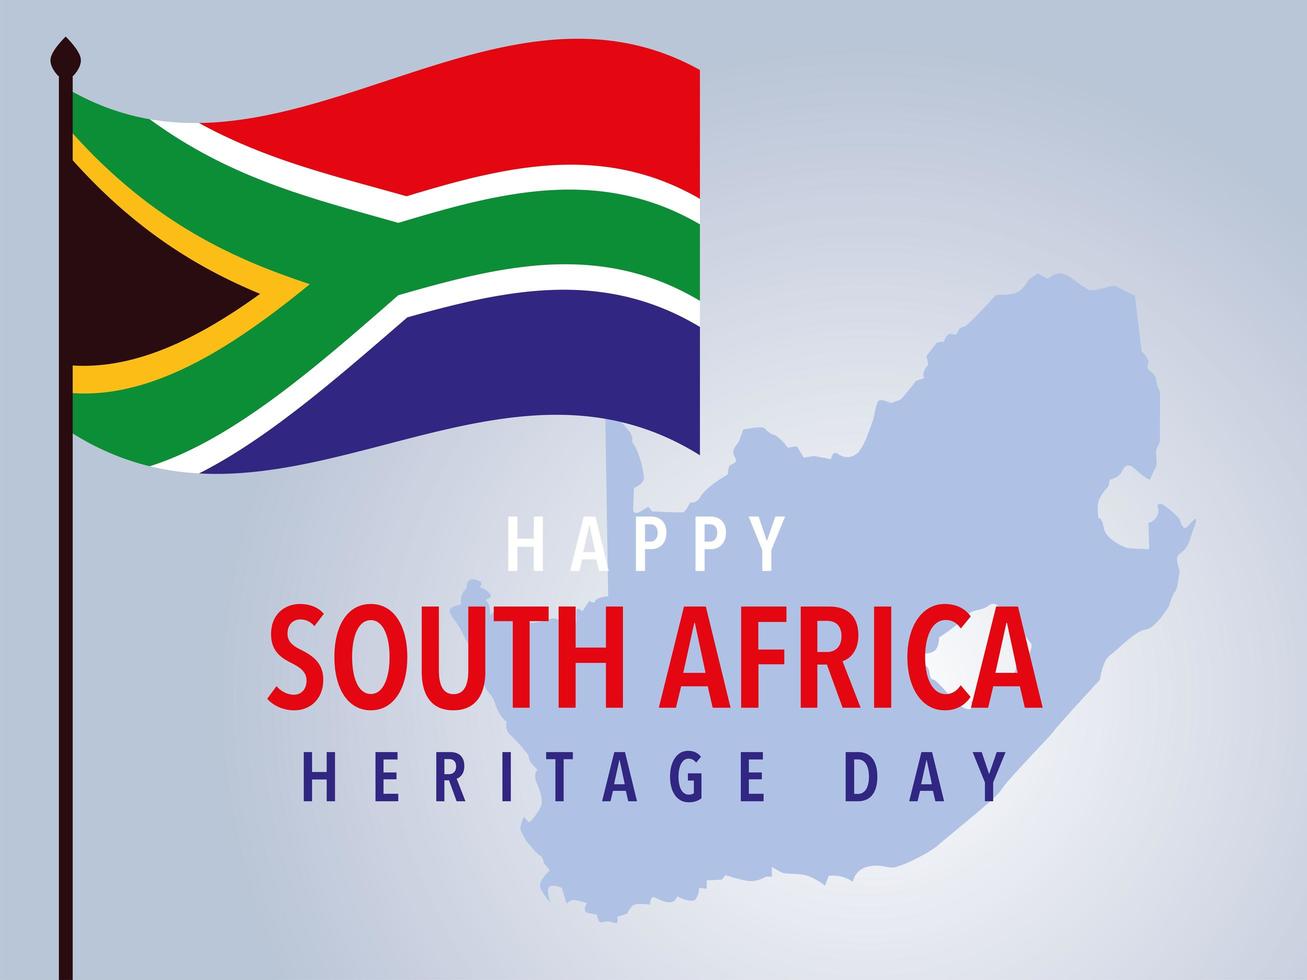 Fröhlicher Tag des südafrikanischen Erbes, Flagge und Hintergrundkarte vektor